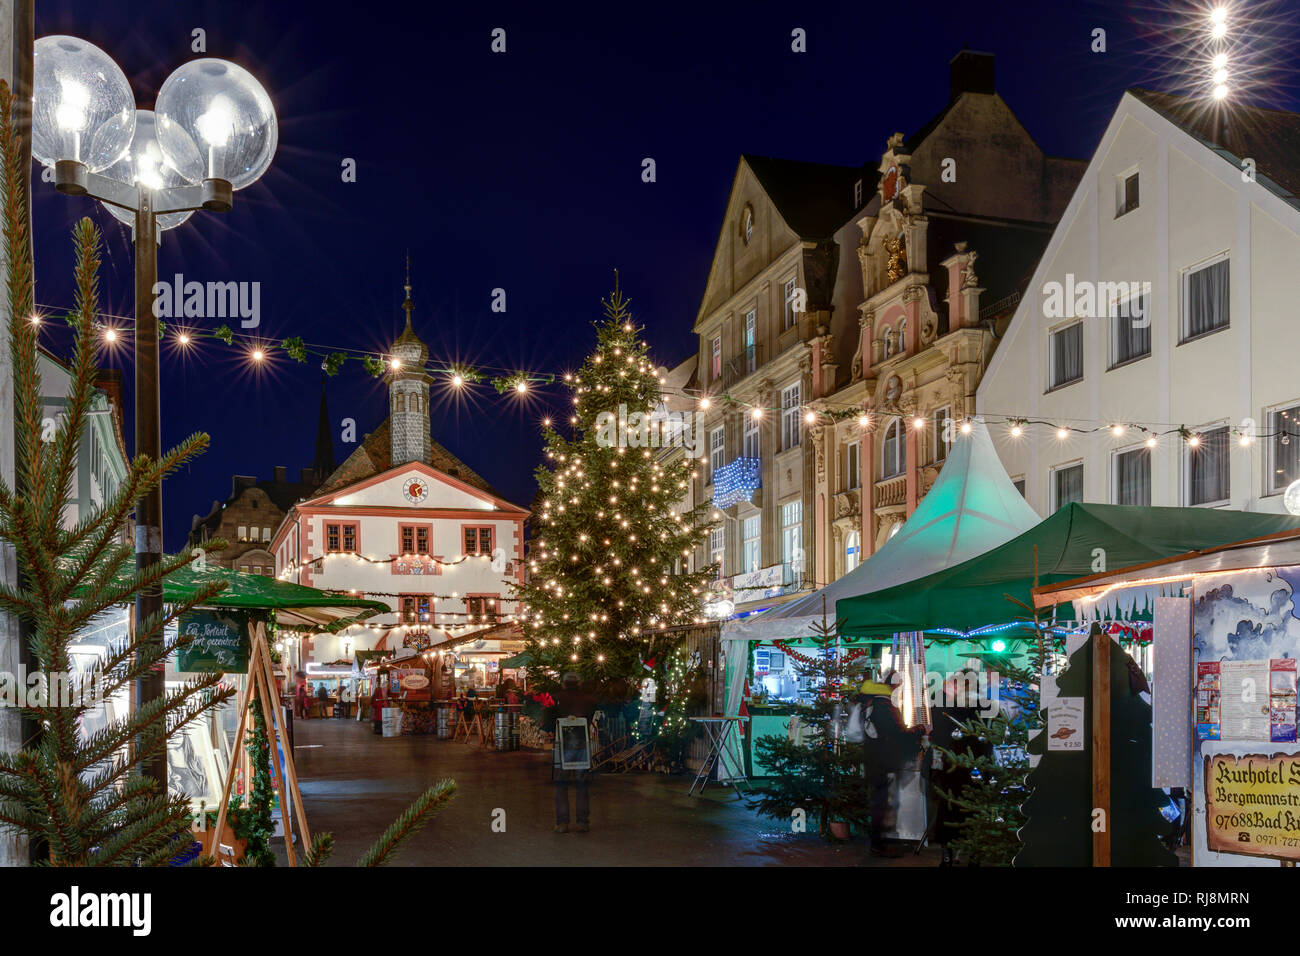 Weihnachtsmarkt, Marktplatz, Altes Rathaus, Fußgängerzentrum, Zentrum, Kurstadt, Blaue Stunde, Weihnachtsdekoration, Bad Kissingen, Franken, Bayern, D Stock Photo